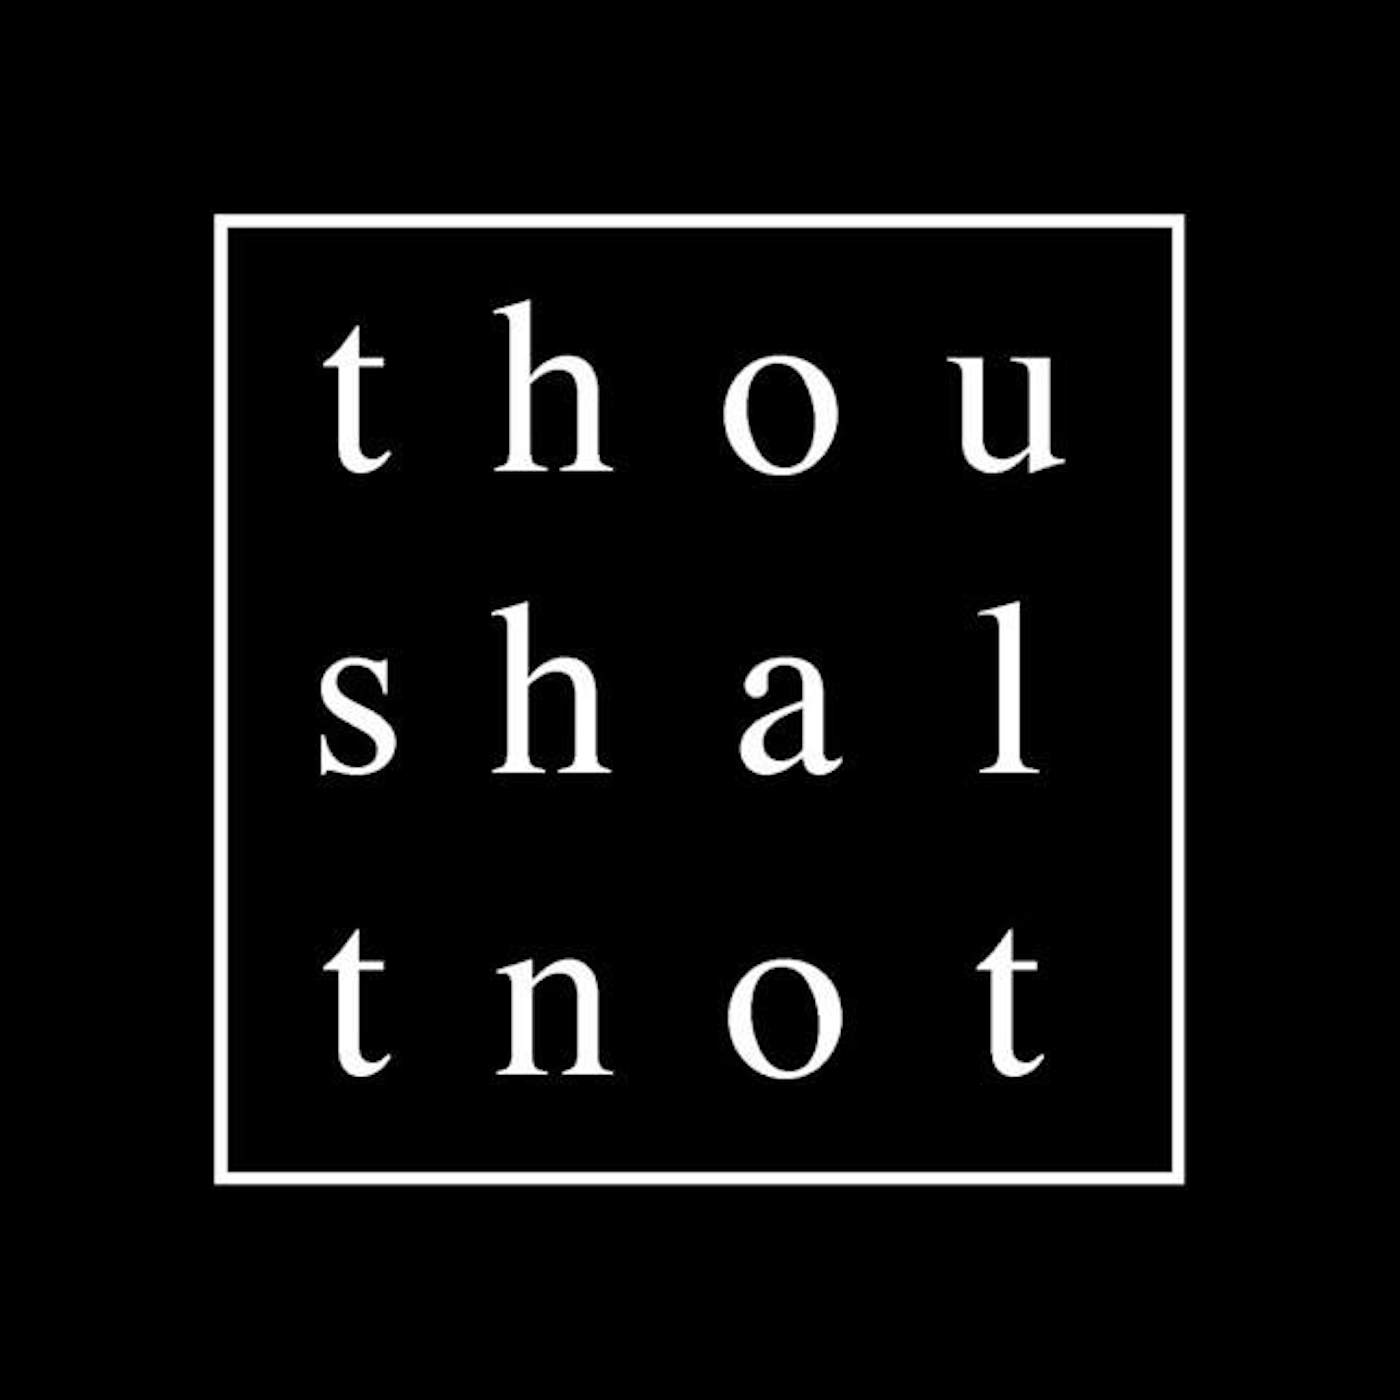 Thoushaltnot